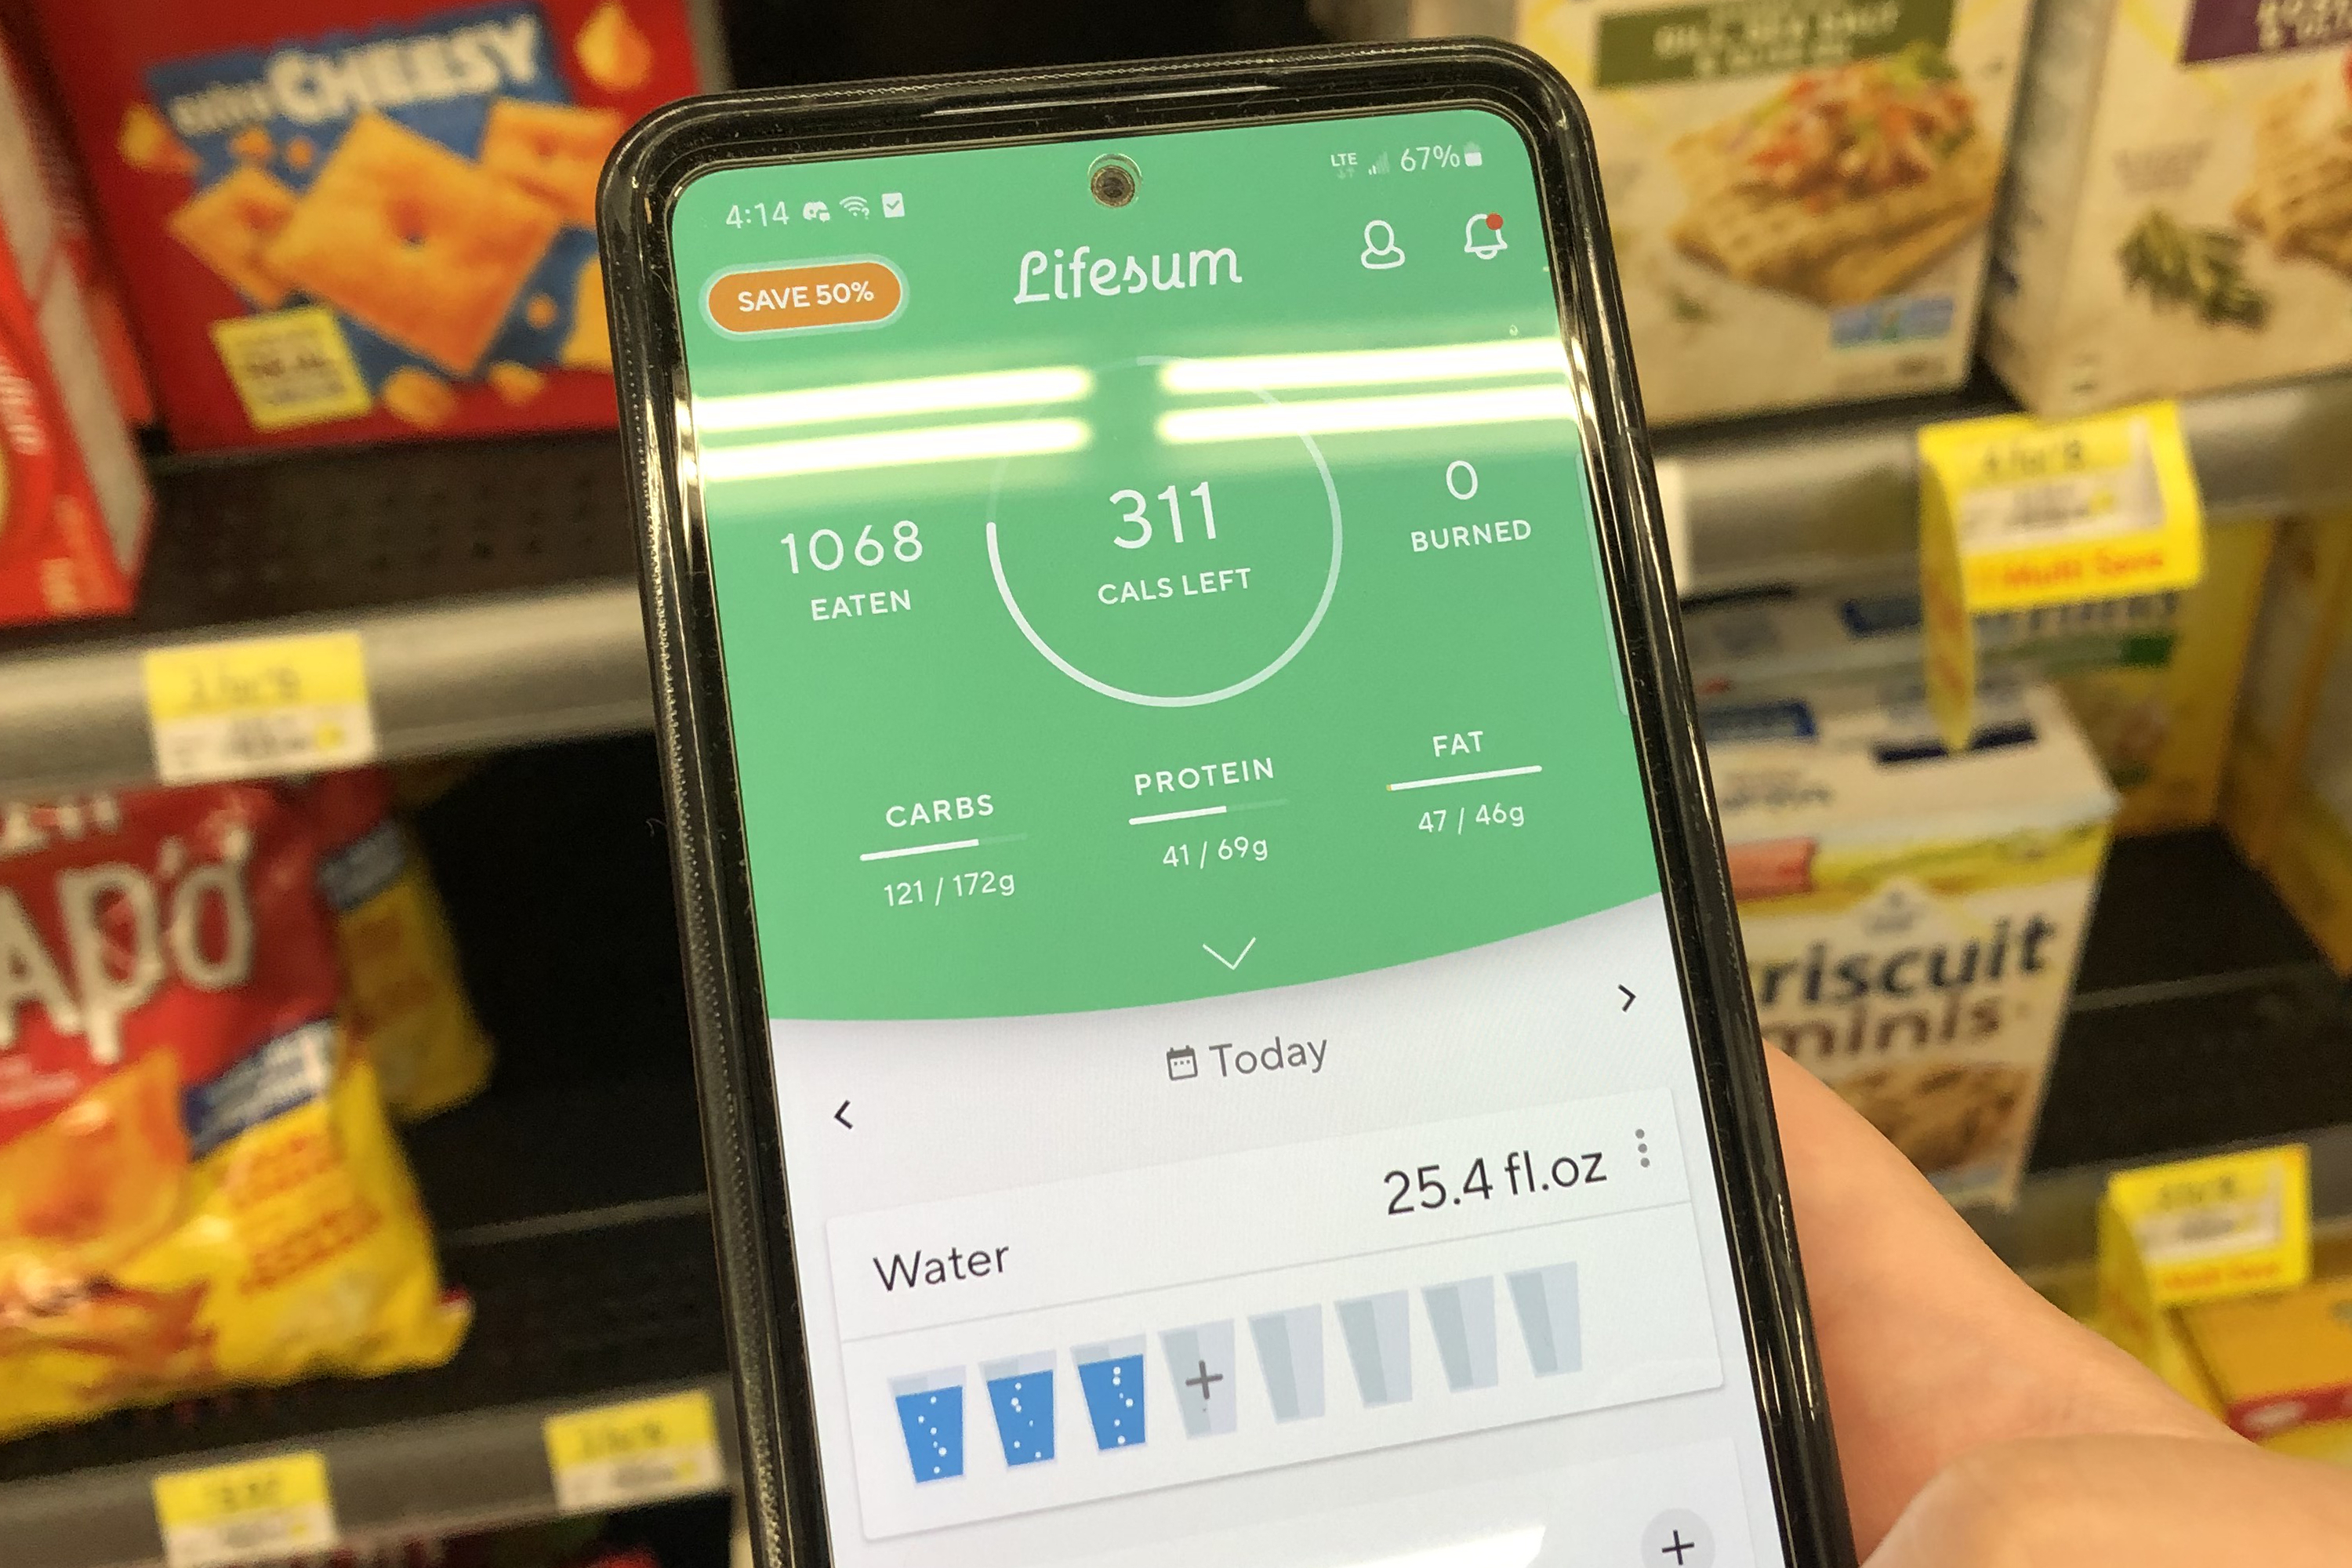 App LifeSum na tela do telefone com bolachas em segundo plano em uma prateleira de loja.